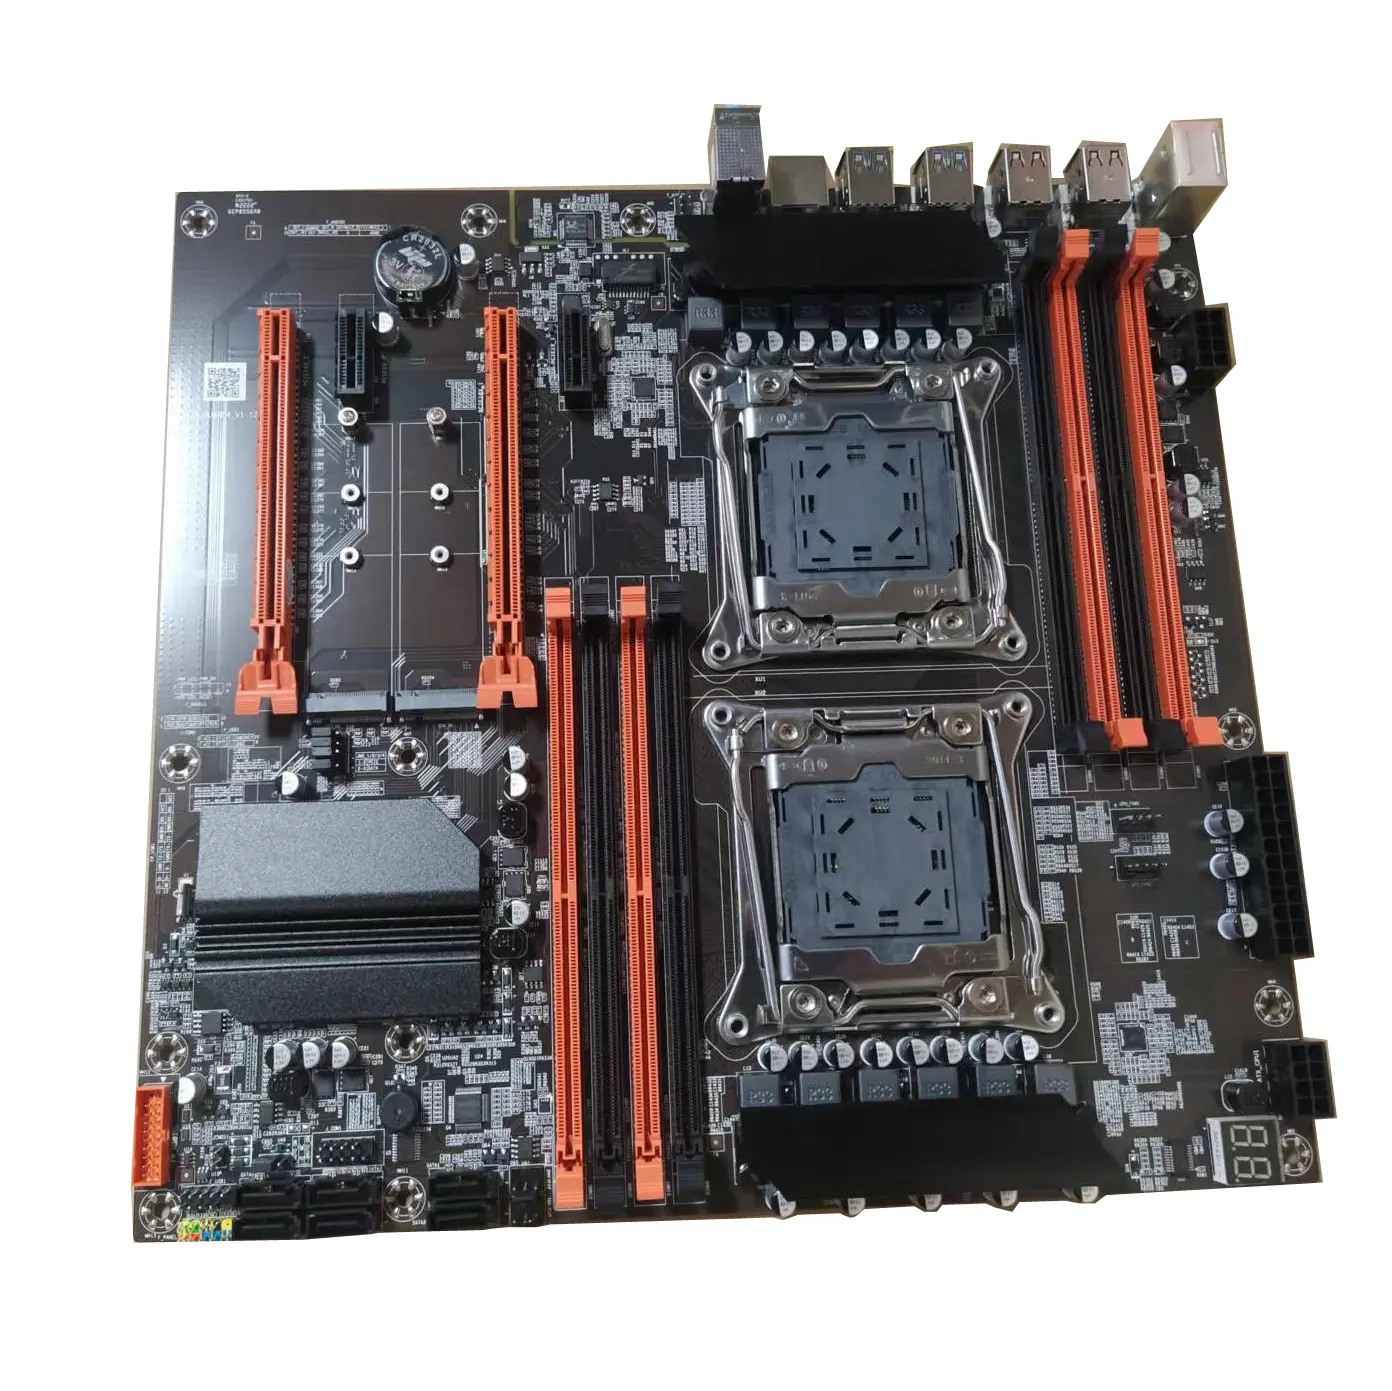 Aleo Zx-Du99 DDR4 CPU Bo mạch chủ Hỗ trợ Dual Xeon E5 LGA2011 V3 V4 loạt Bộ vi xử lý Dual chipset X99 PC chơi Game Bo mạch chủ